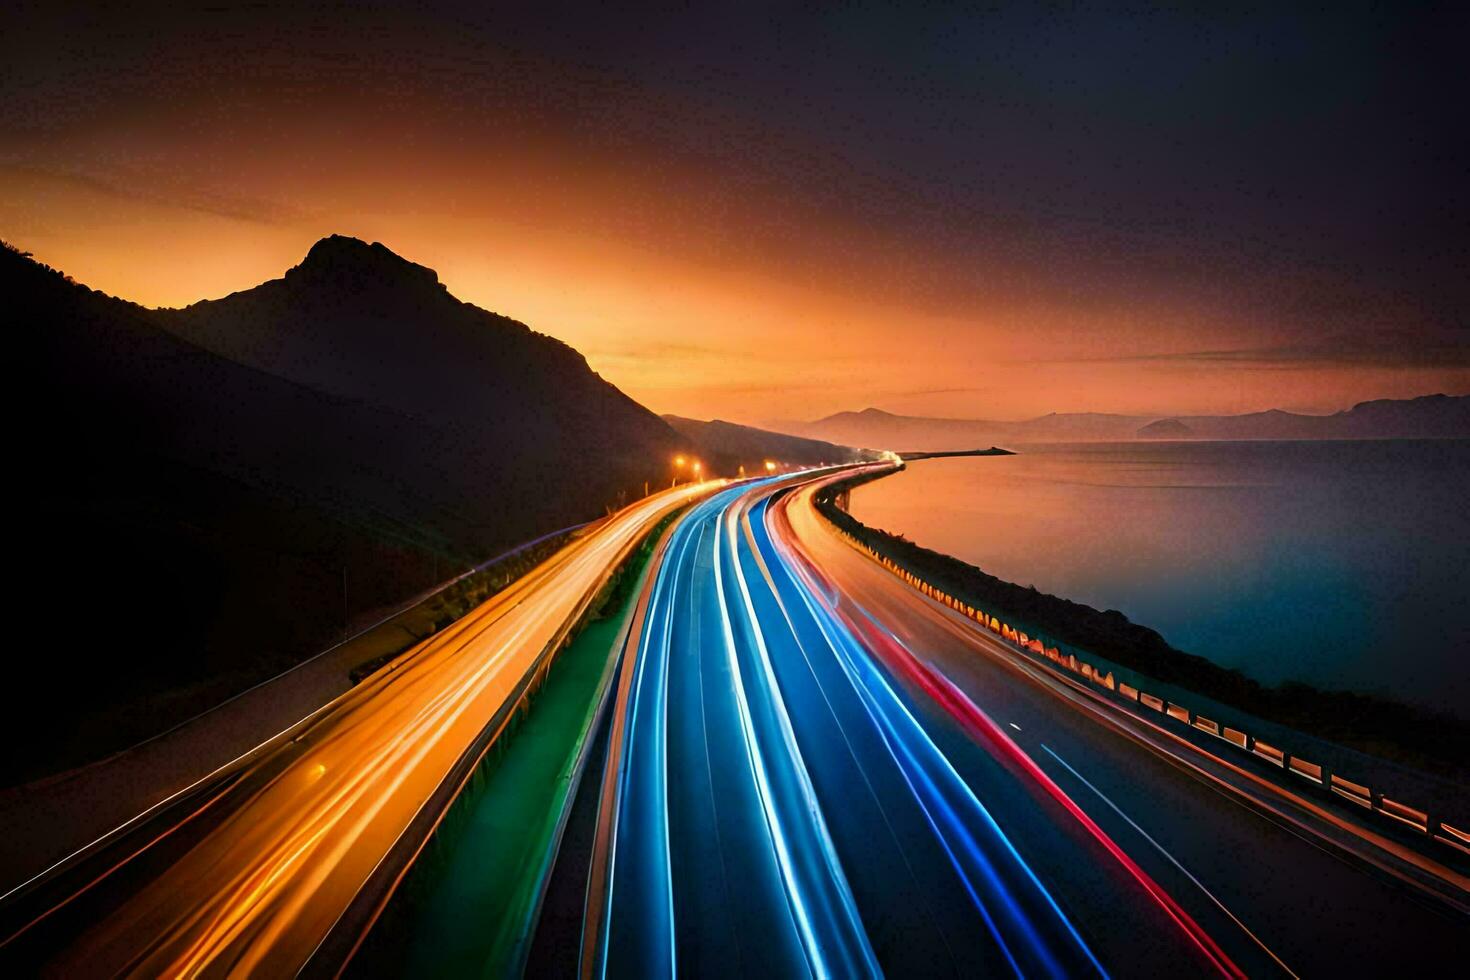 ein lange Exposition fotografieren von ein Autobahn beim Sonnenuntergang. KI-generiert foto